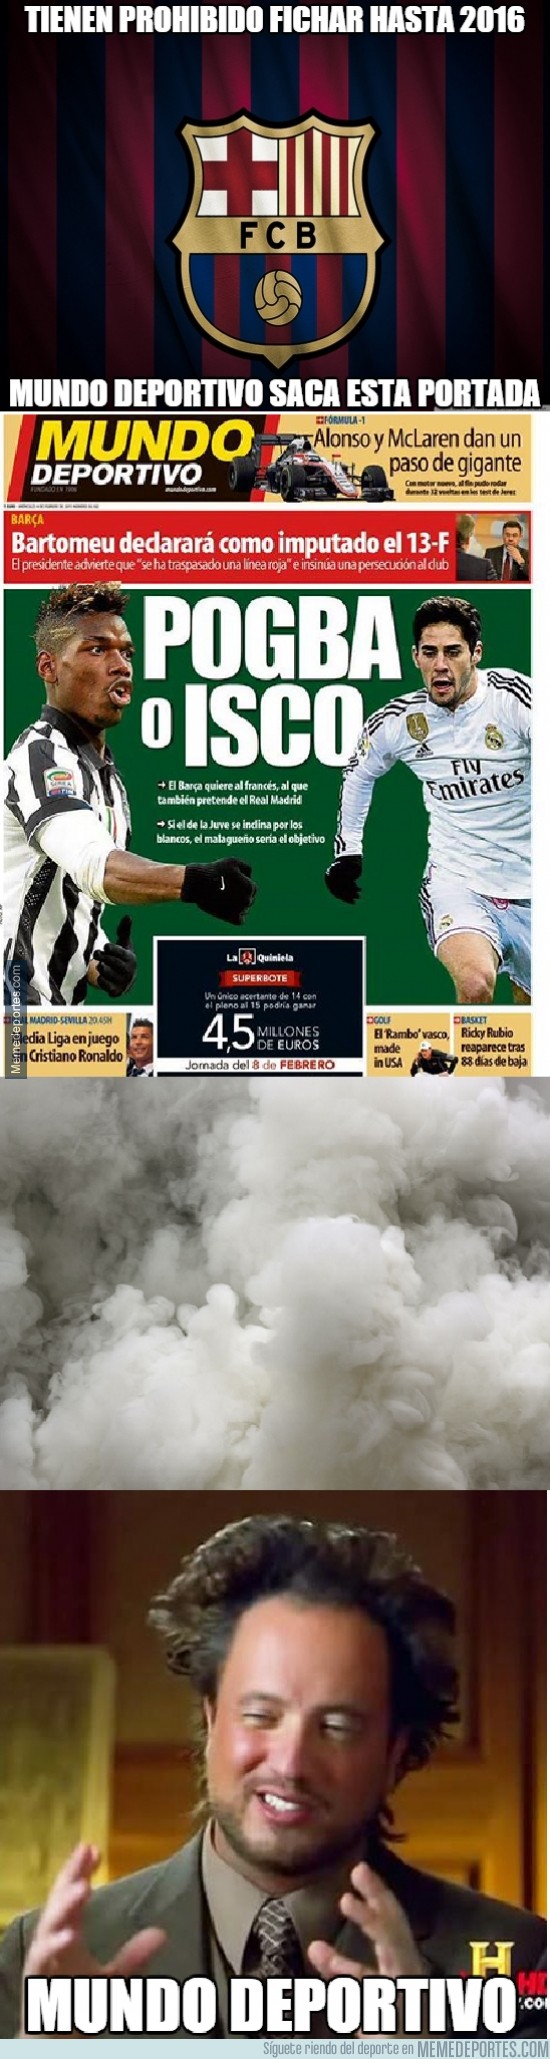 444075 - Mundo Deportivo y su afán de sacar humo sin parar